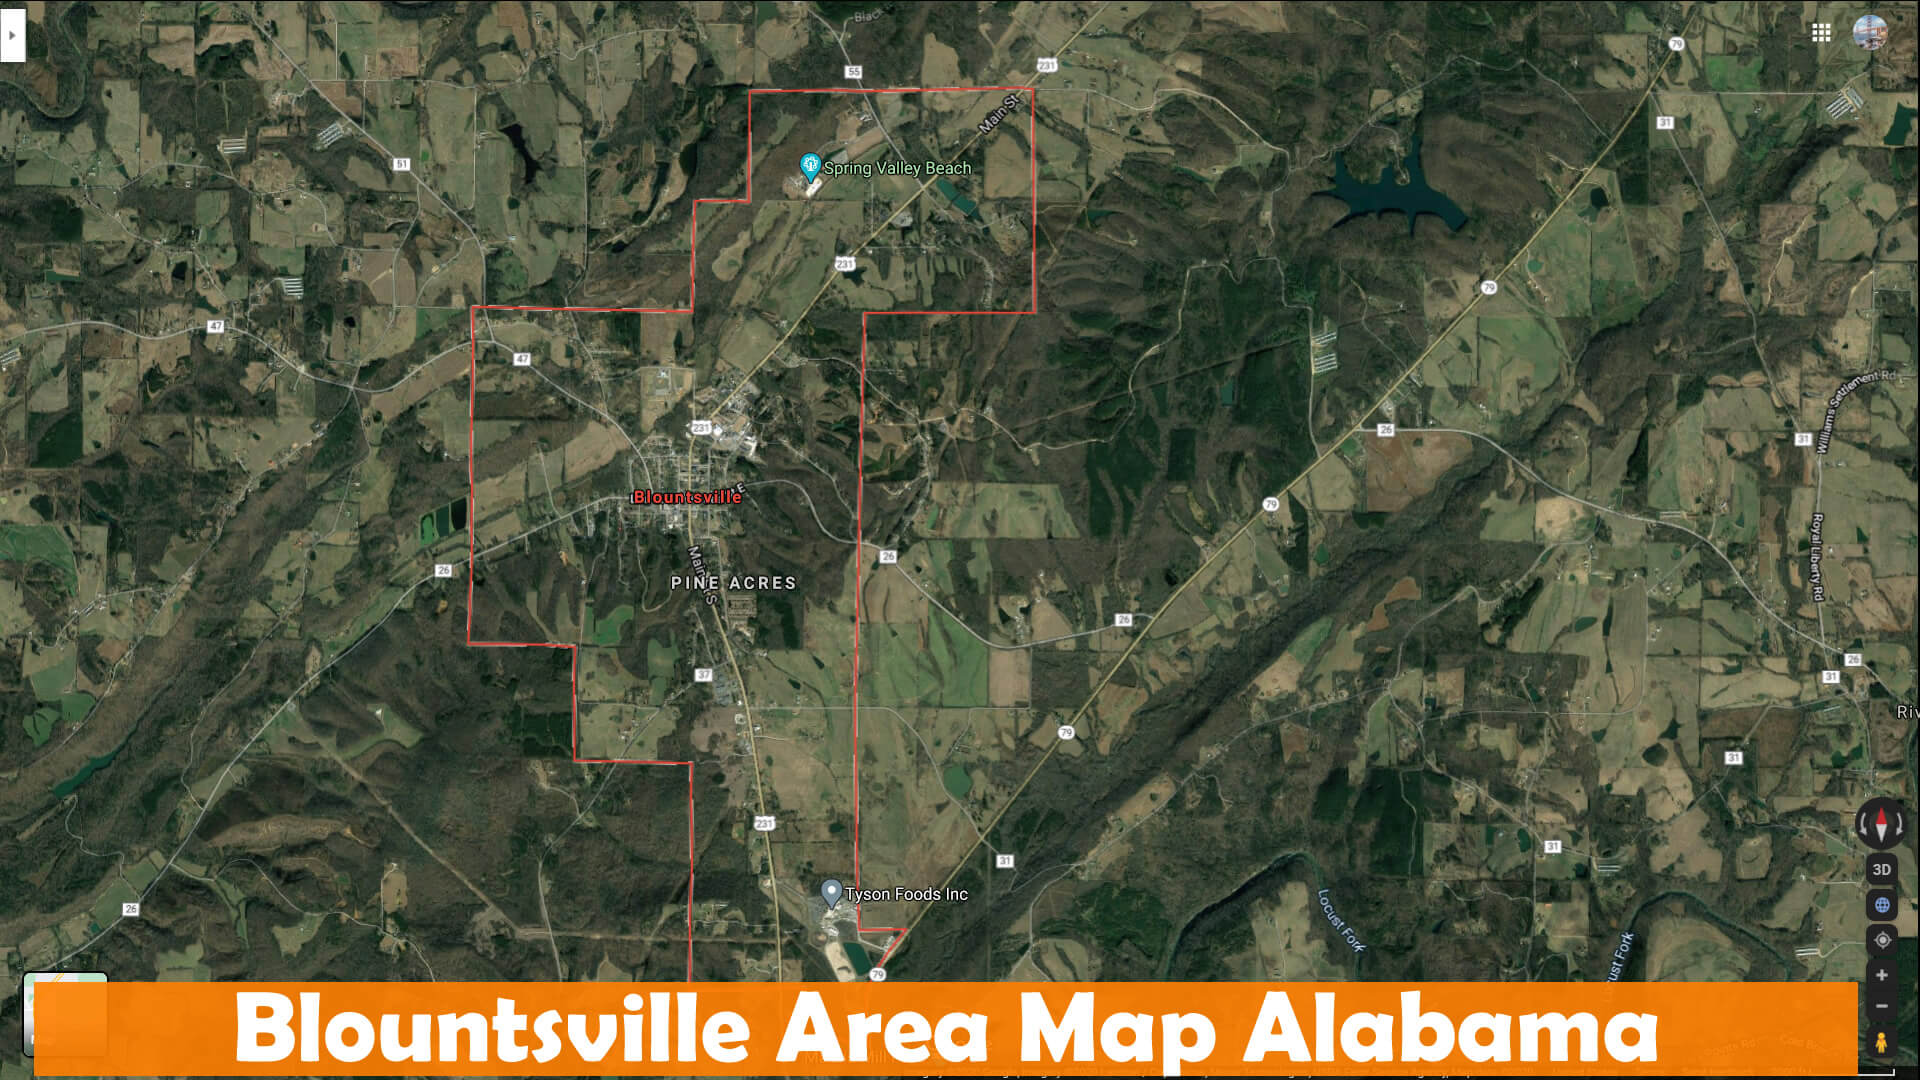 Blountsville Area Map Alabama